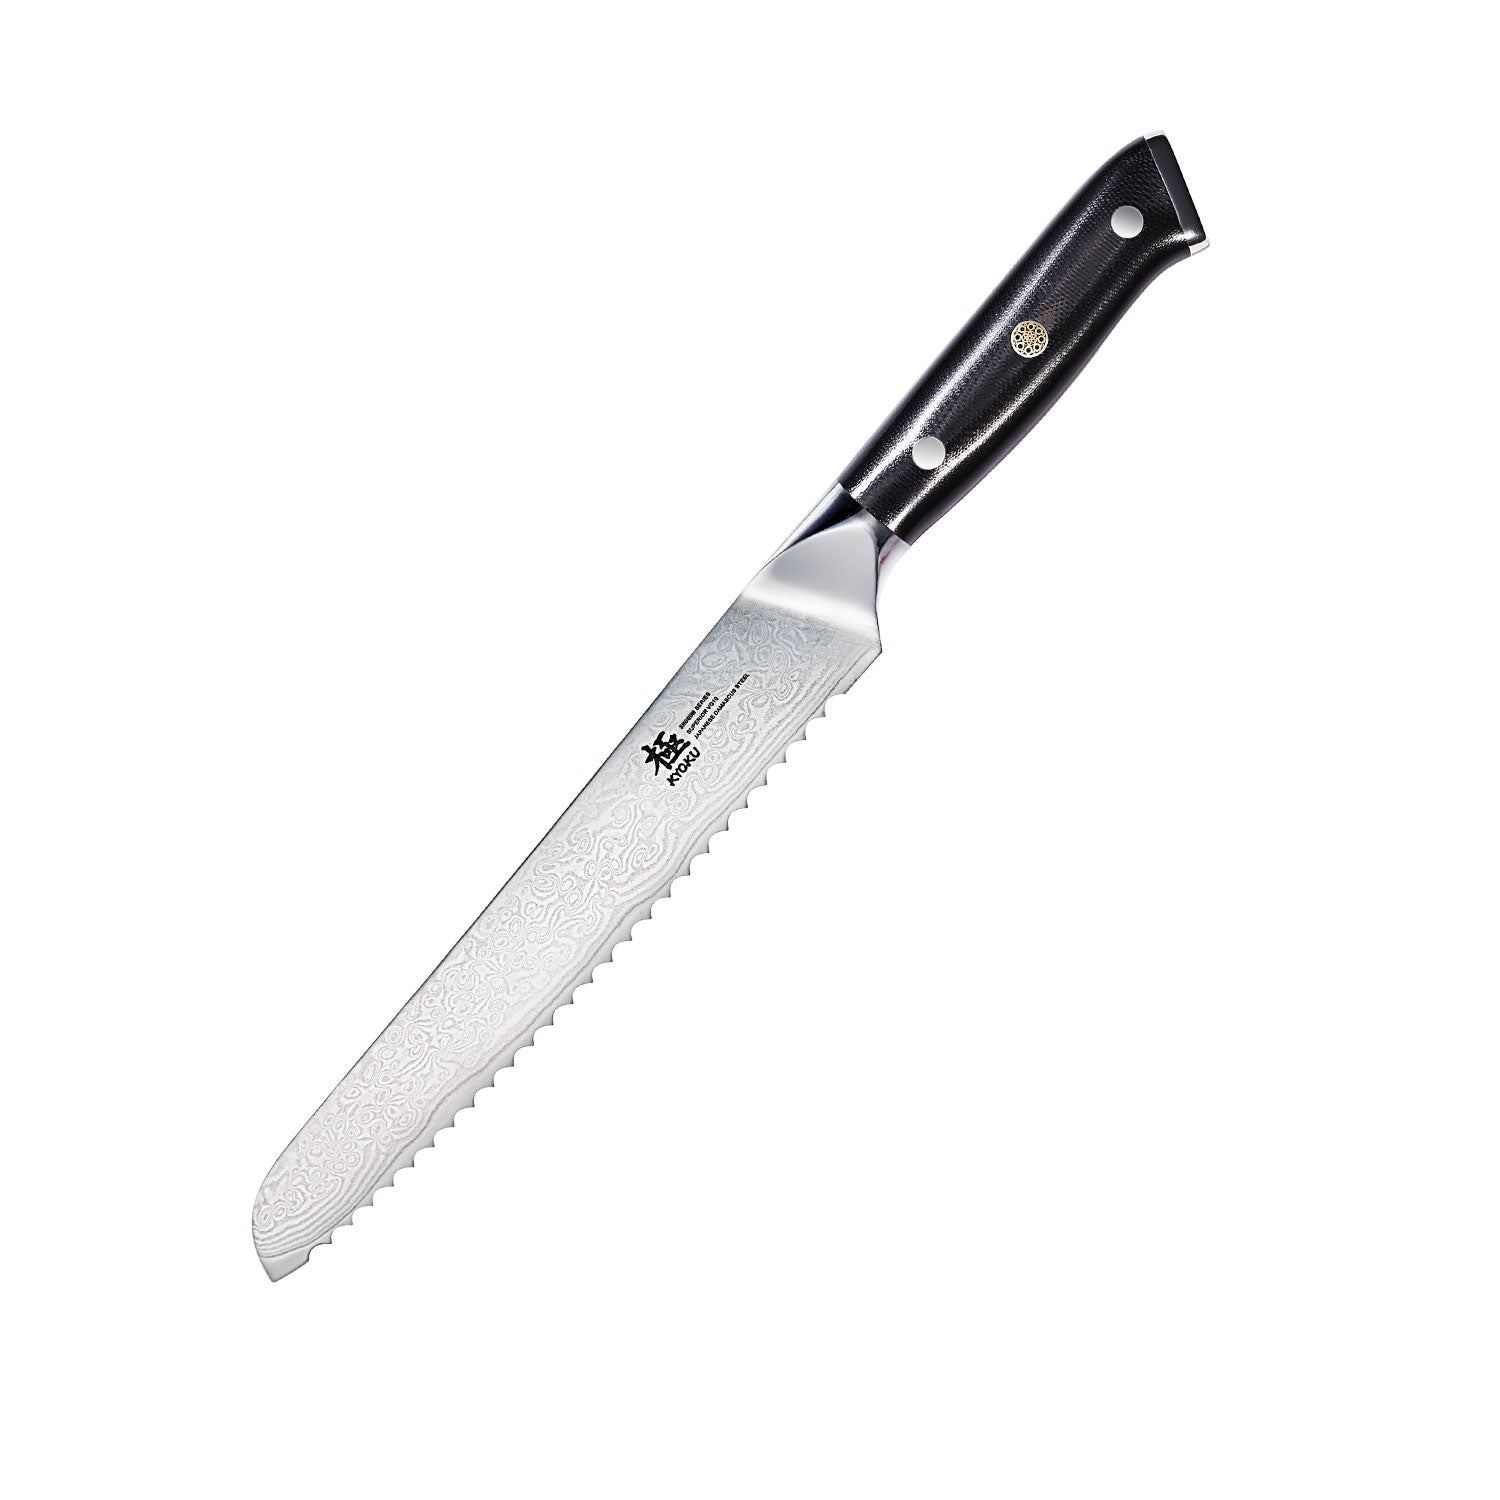 https://kyokuknives.com/cdn/shop/files/Bread-Knives-VG10-Damascus-Steel---Shogun-Series-Kyoku-Knives-1697013030571.jpg?v=1697611976